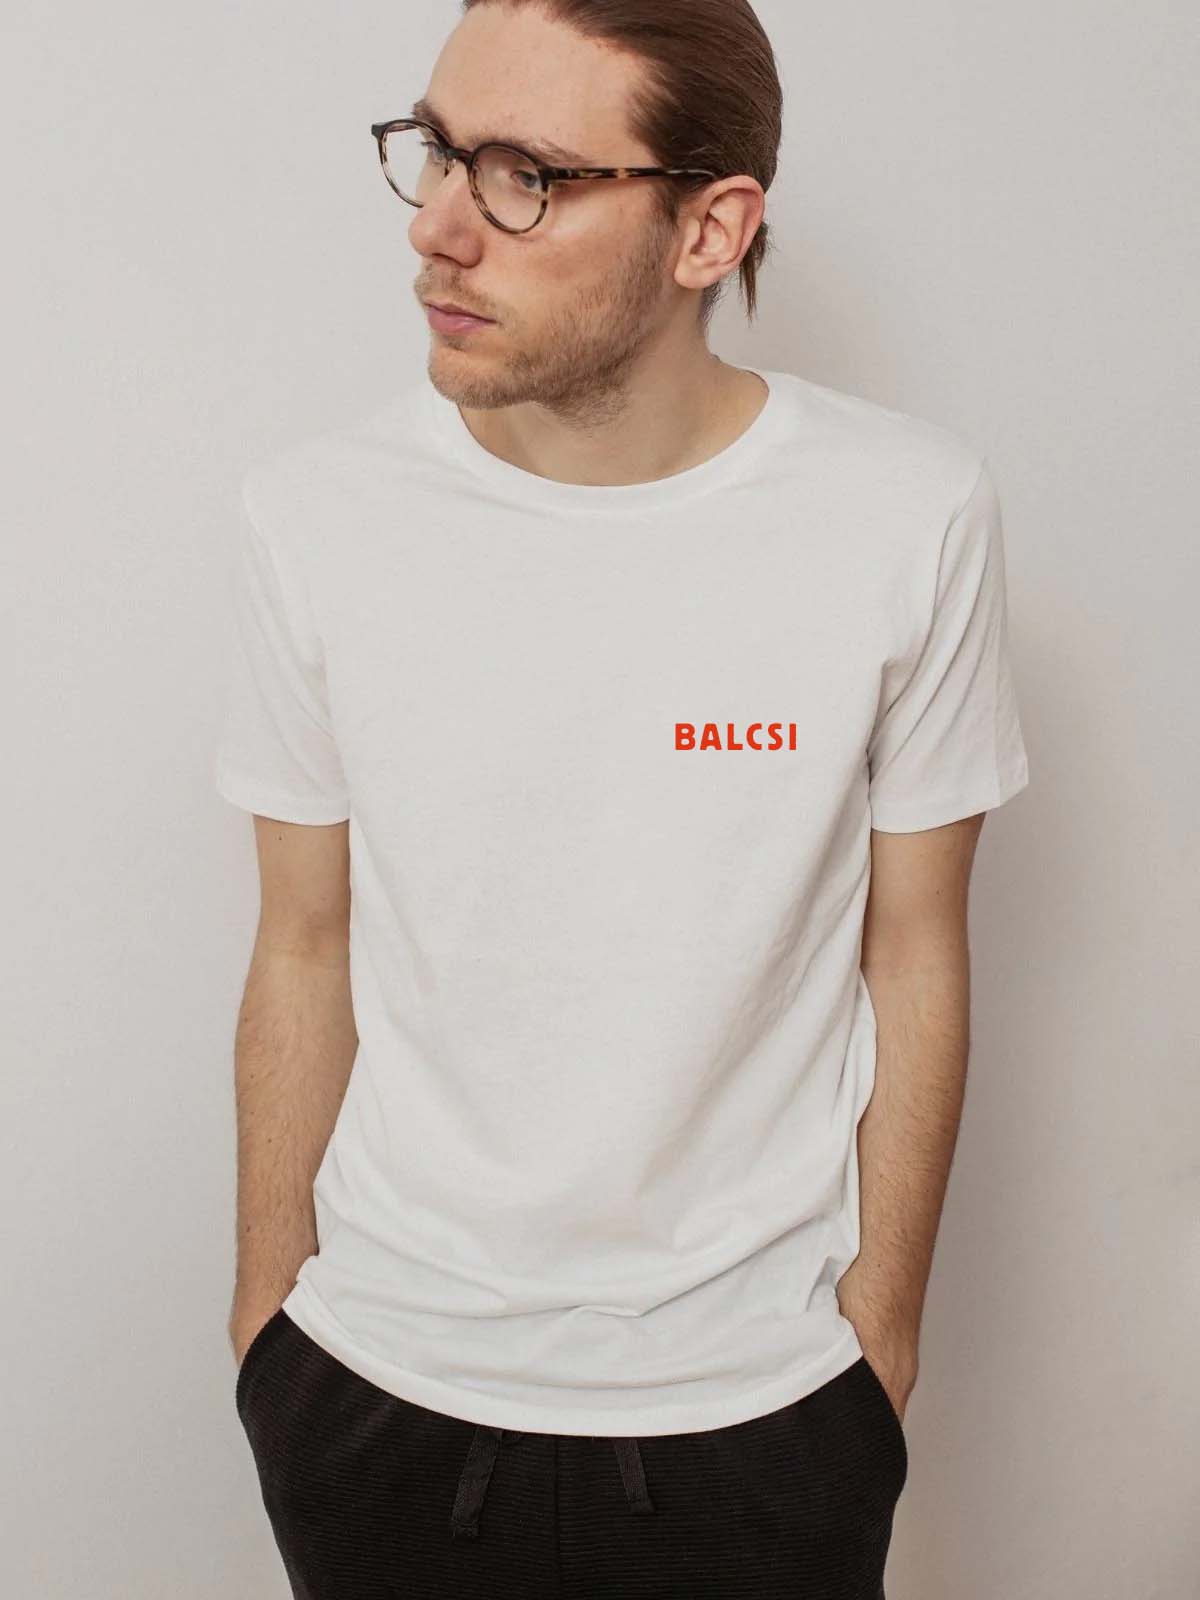 Balcsi white men's t-shirt